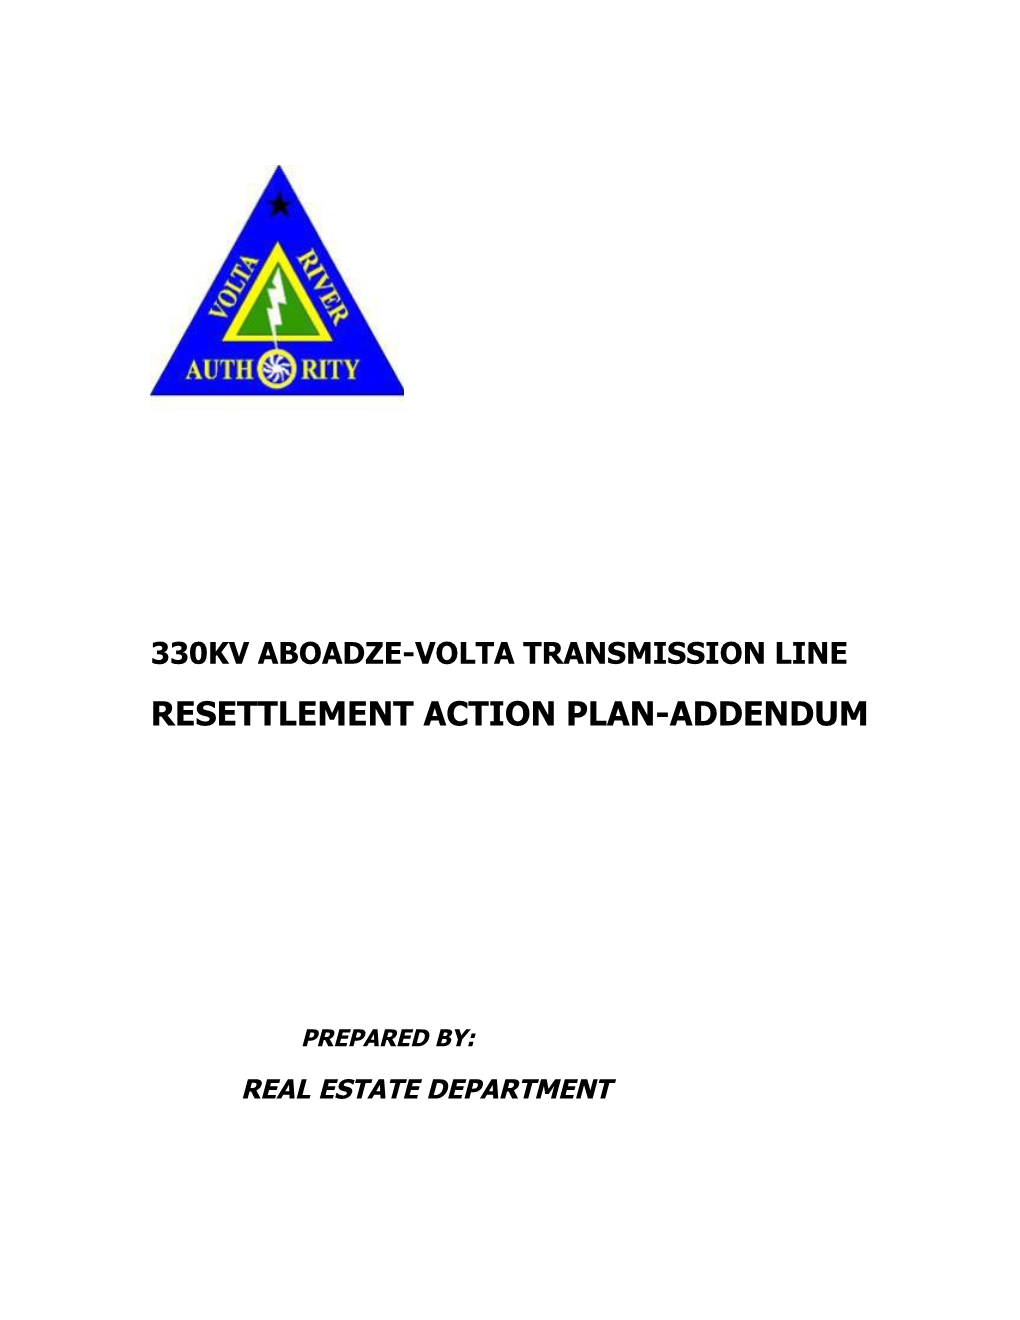 330Kv Aboadze-Volta Transmission Line